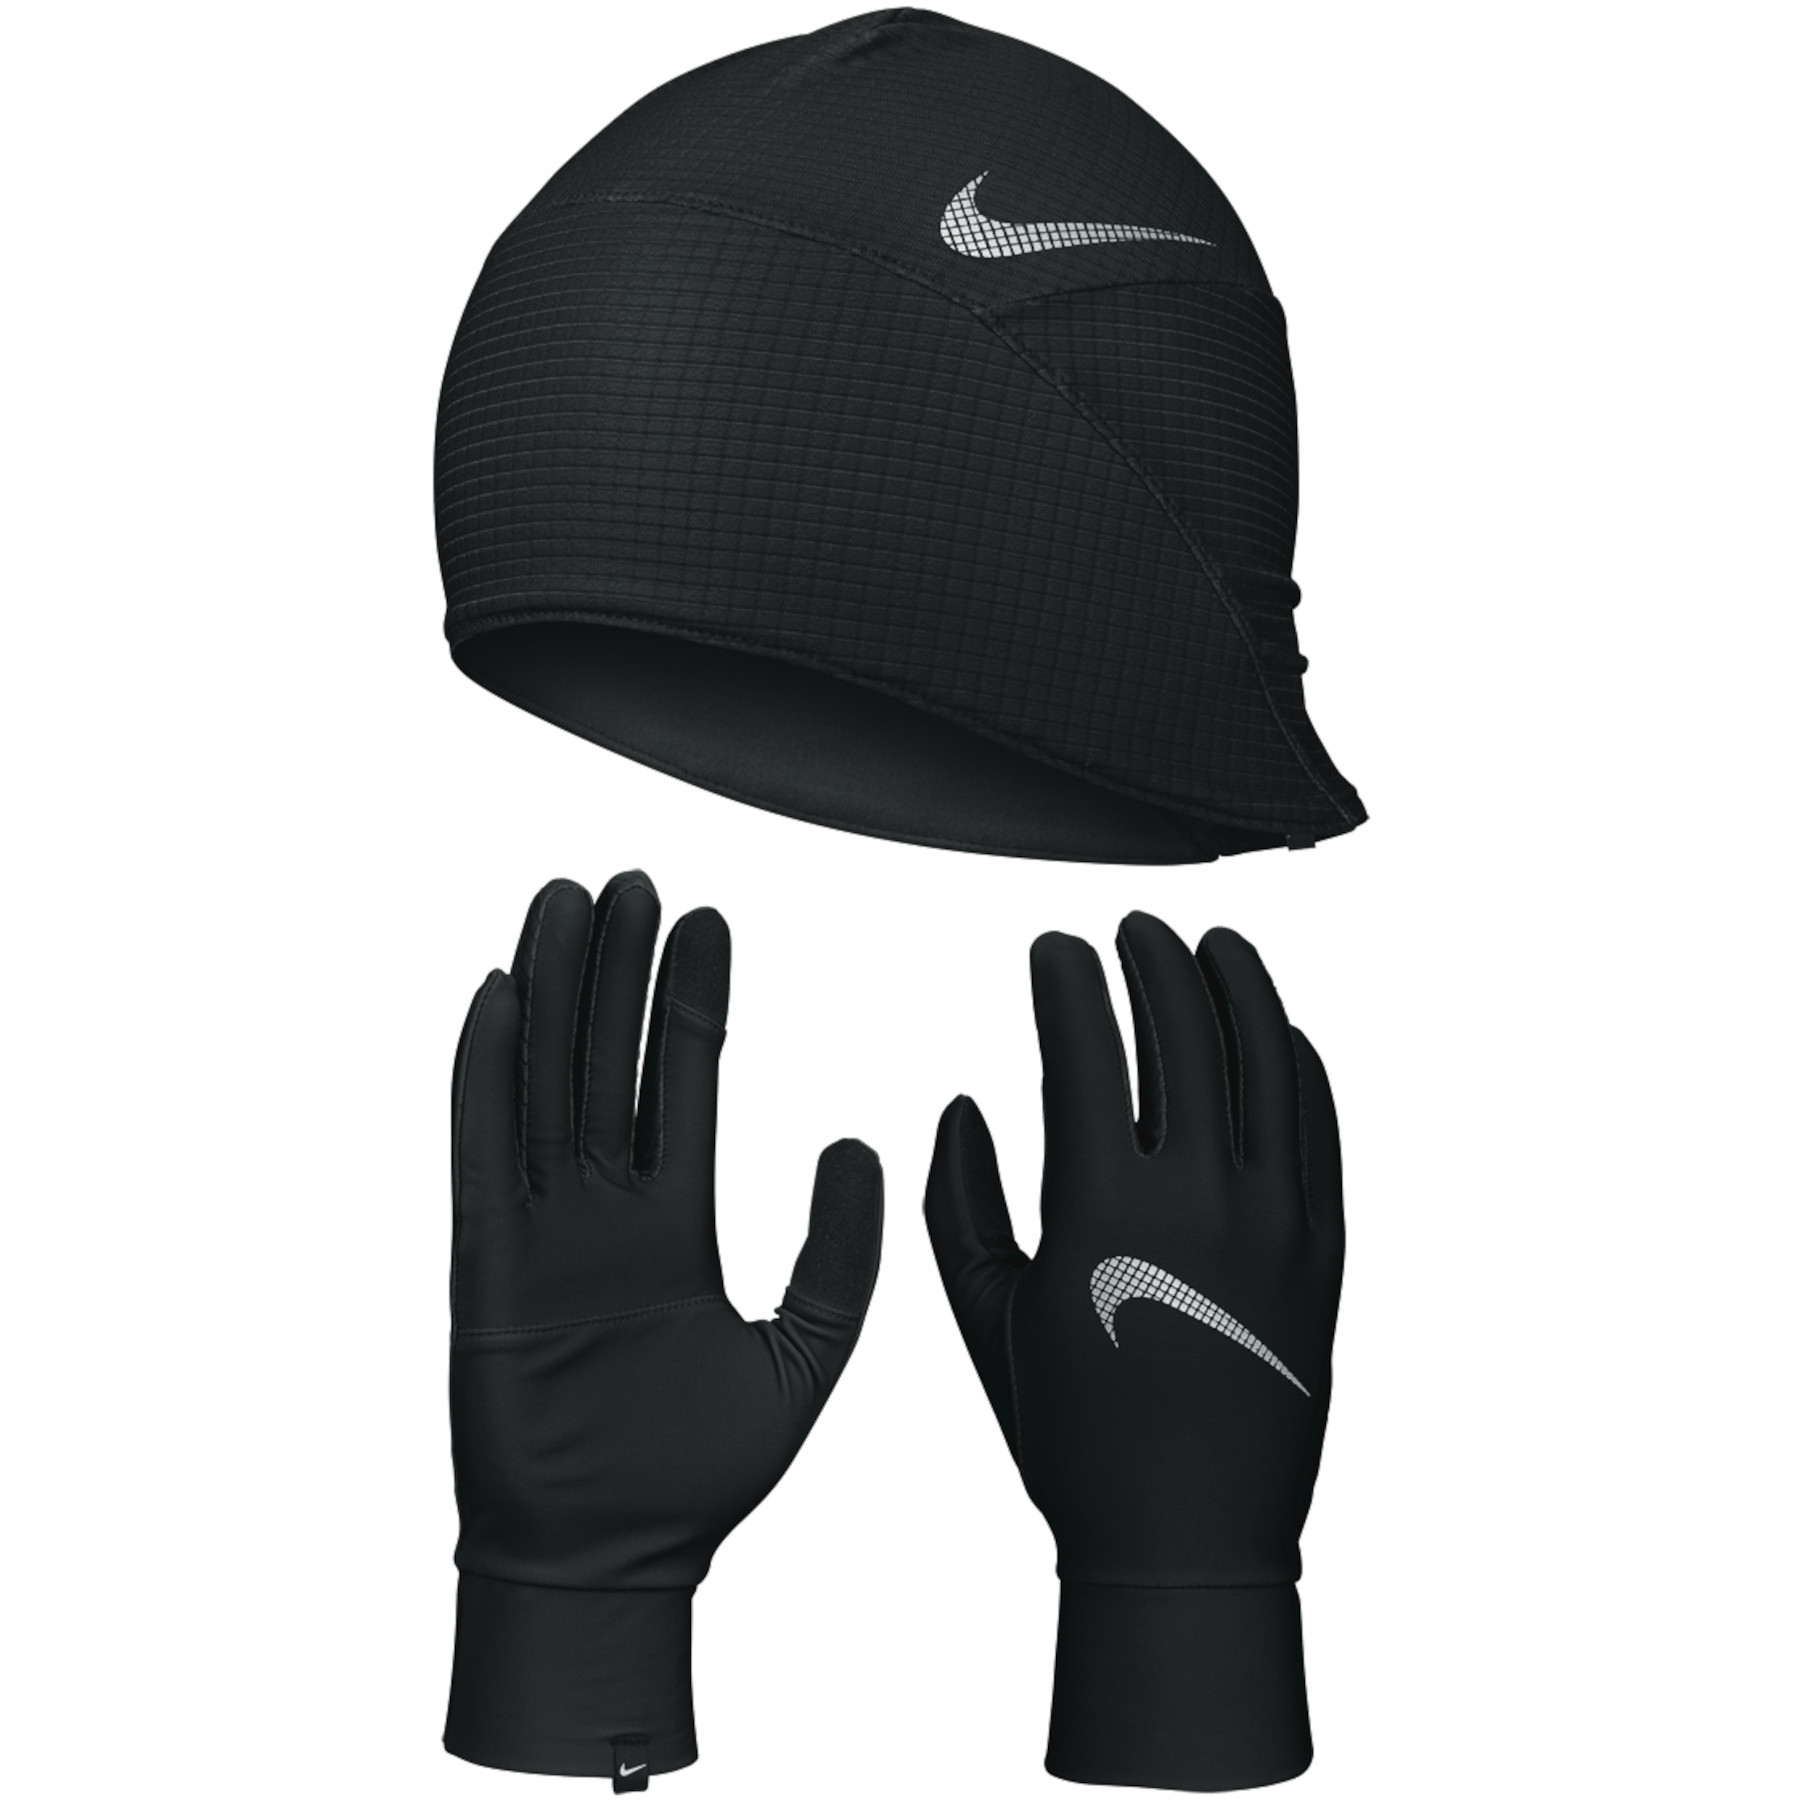 Produktbild von Nike Essential Running Set Herren Handschuhe + Mütze - black/black/silver 082